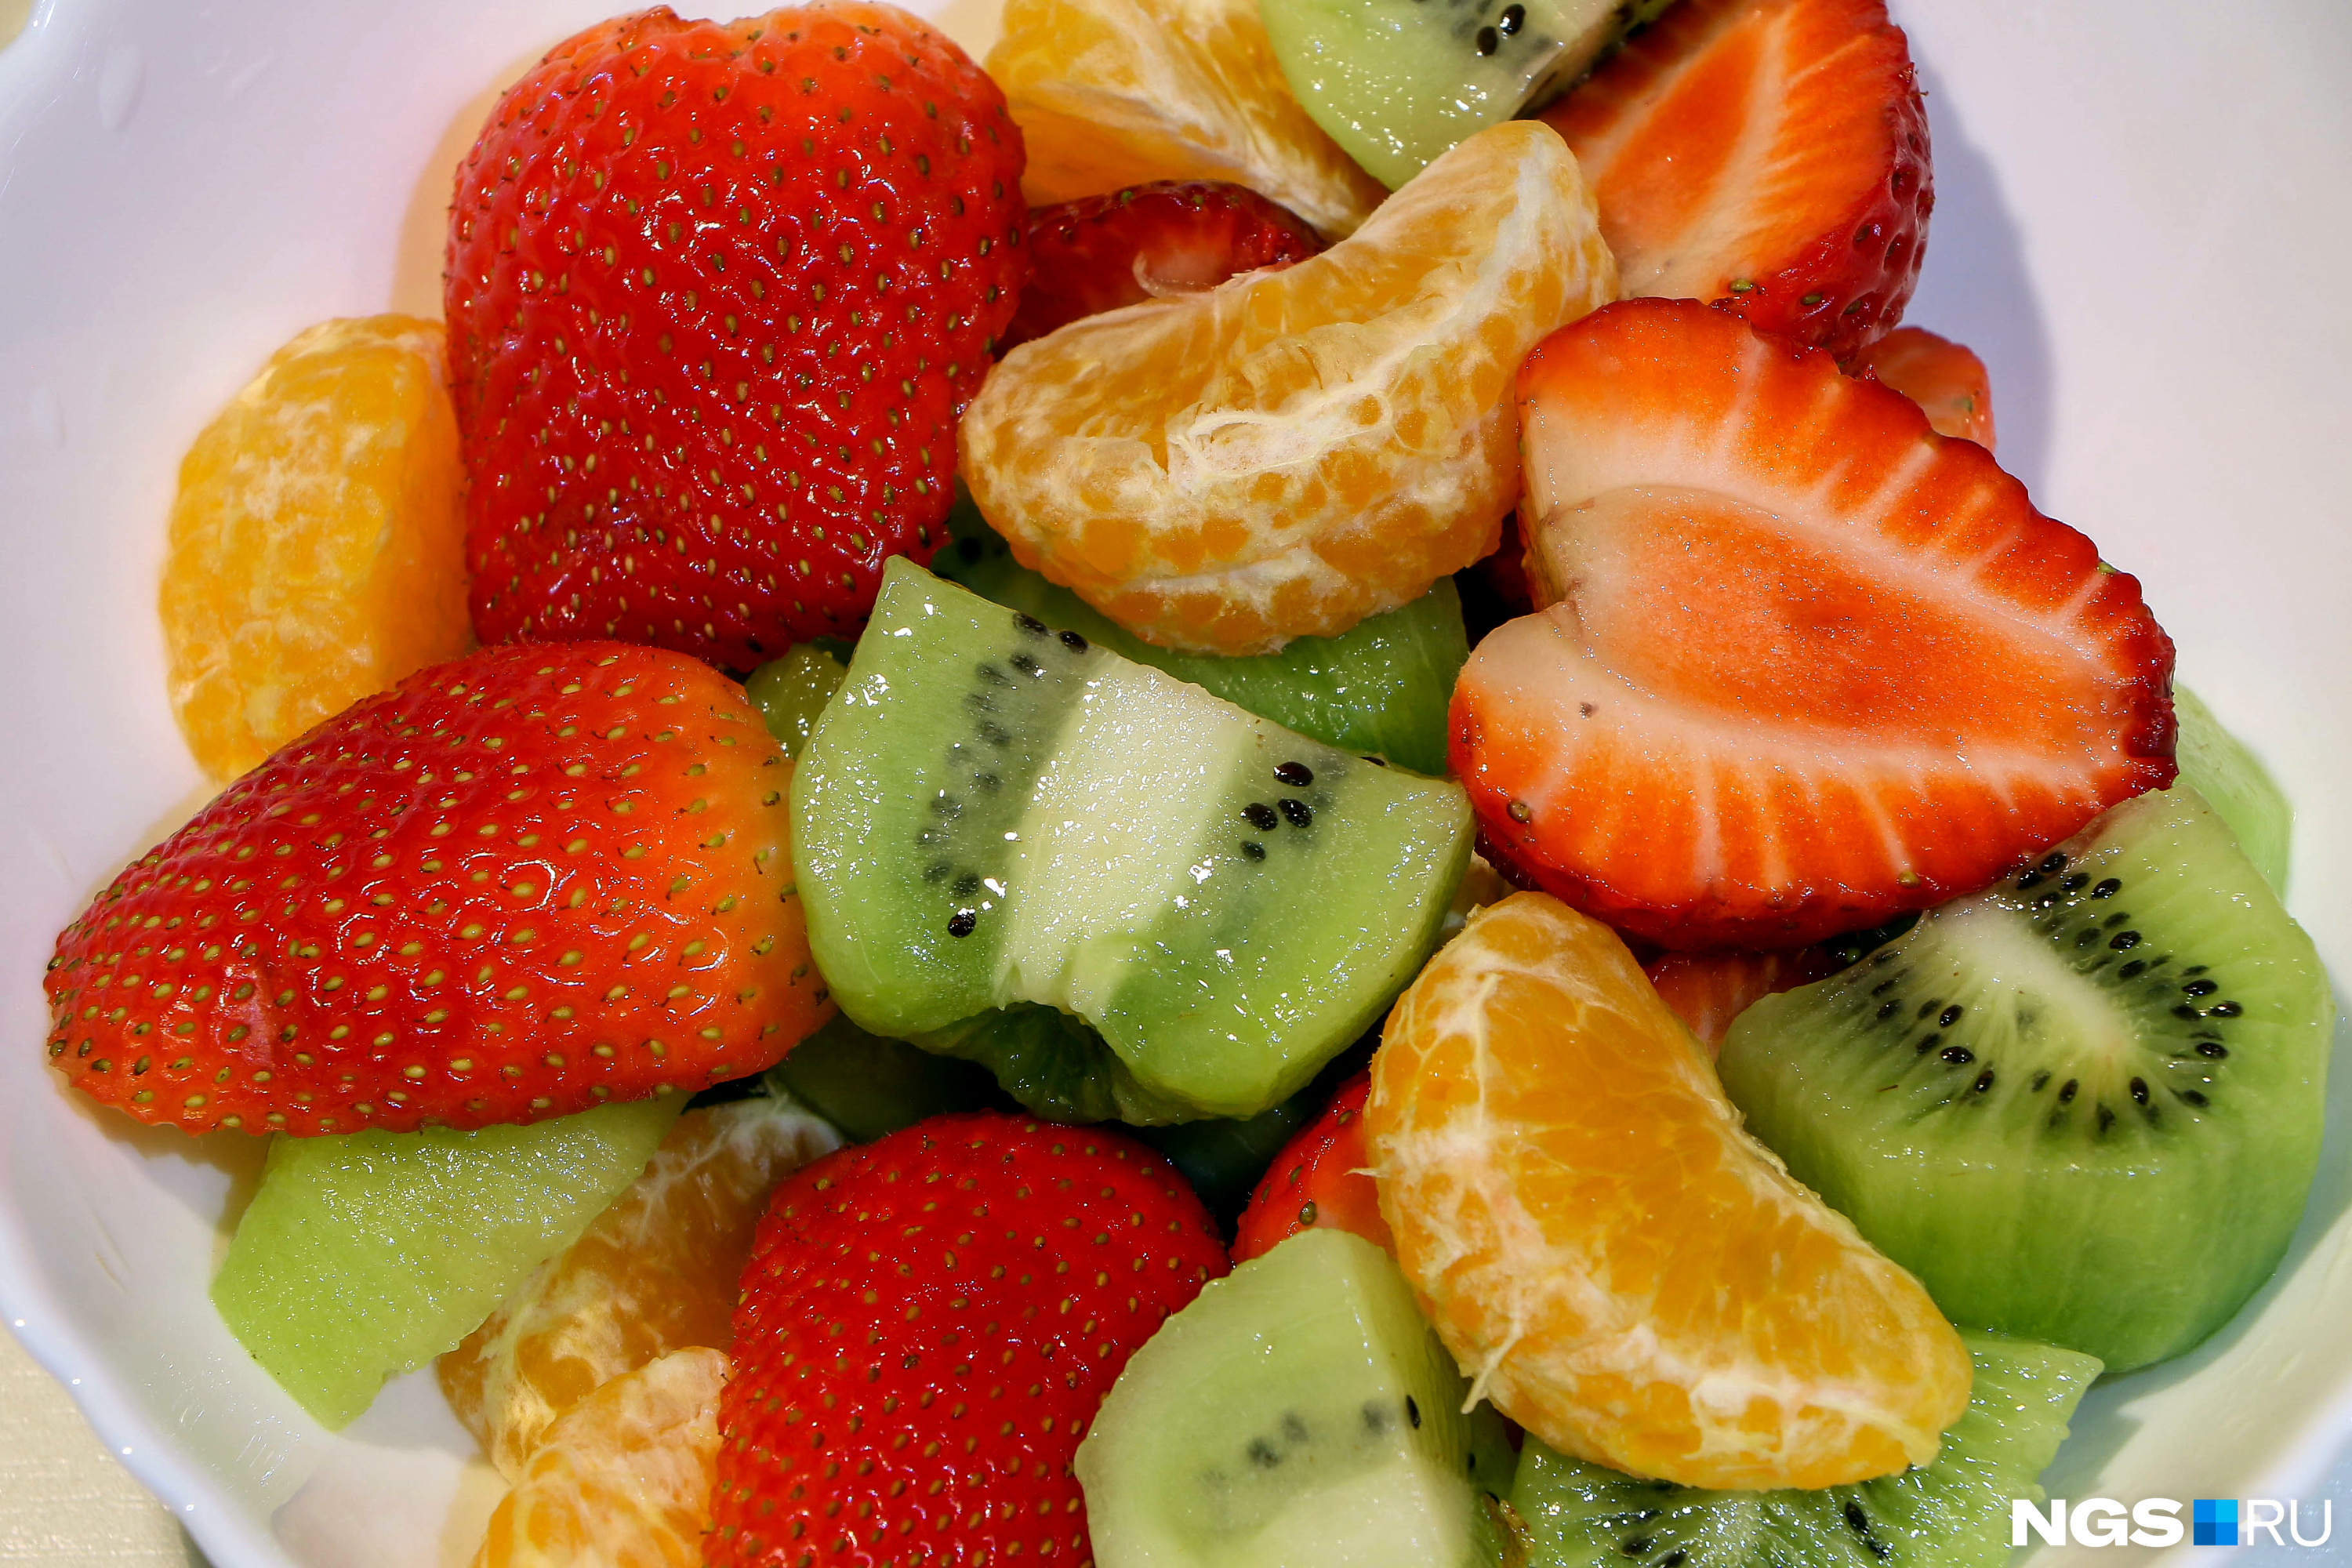 Нехватка витаминов возникает и из-за небольшого количества фруктов и овощей в рационе